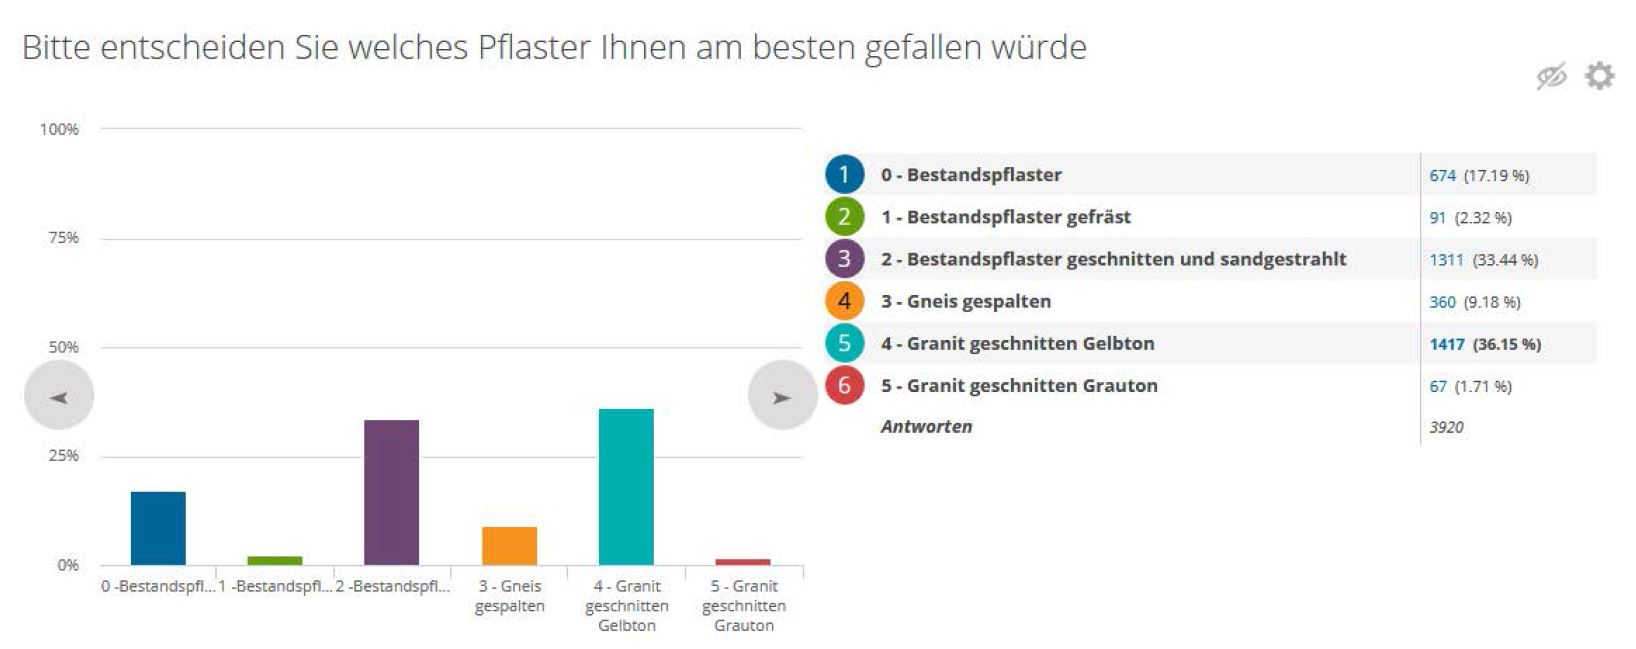 Das Ergebnis der Online-Umfrage zum Altstadt-Pflaster